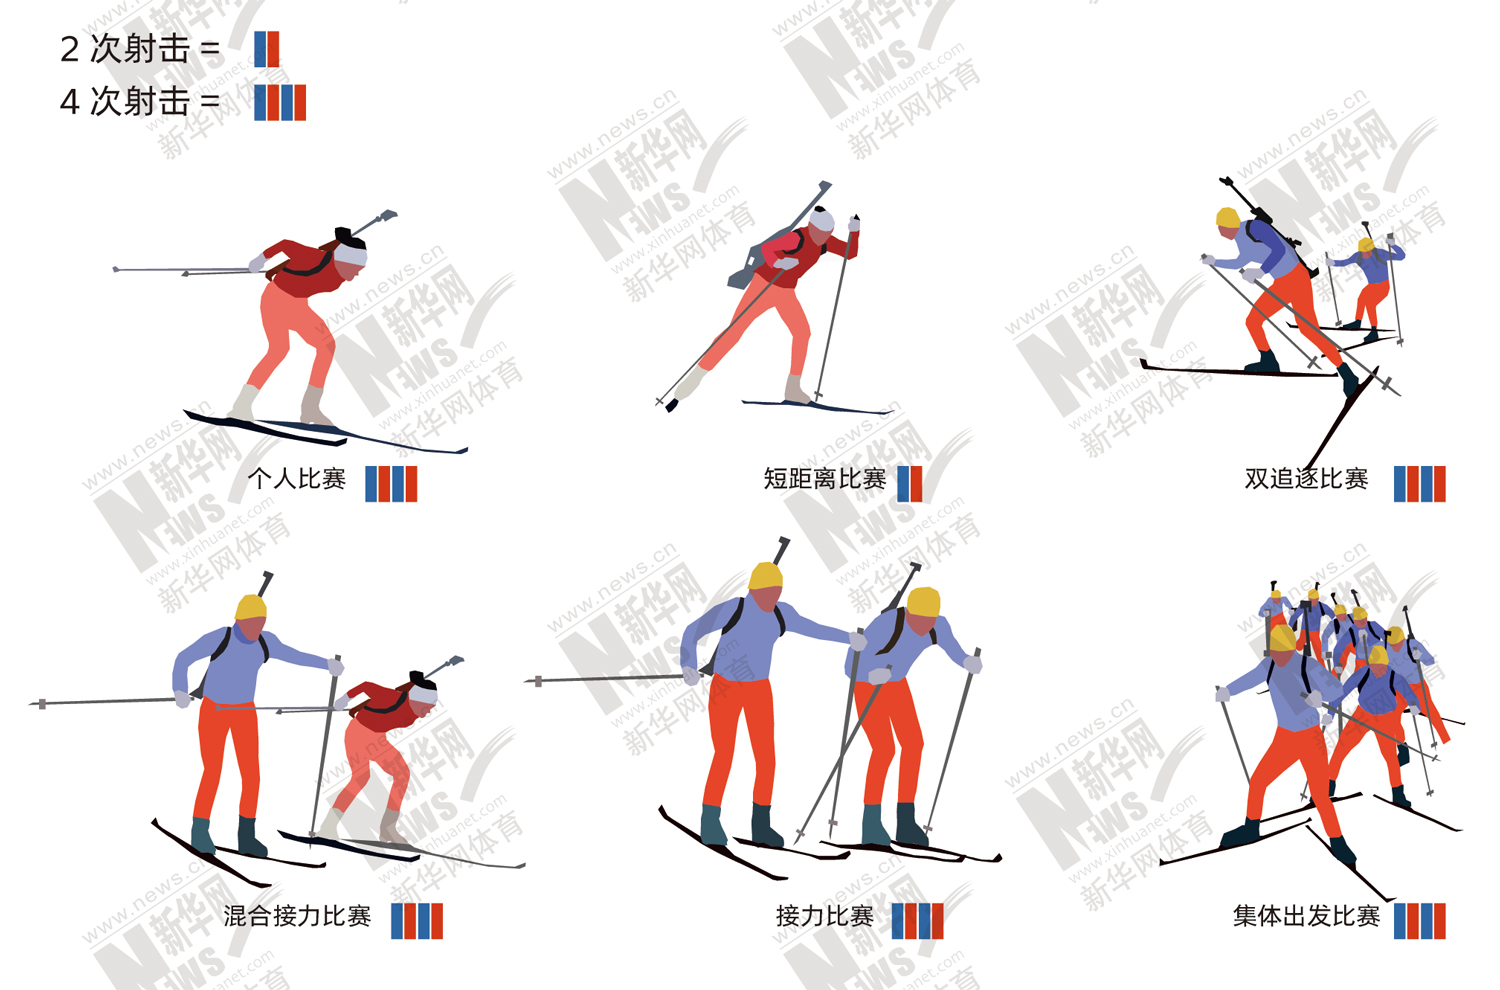 图解北京冬奥项目⑨冬季两项一场古老刺激的猎人游戏